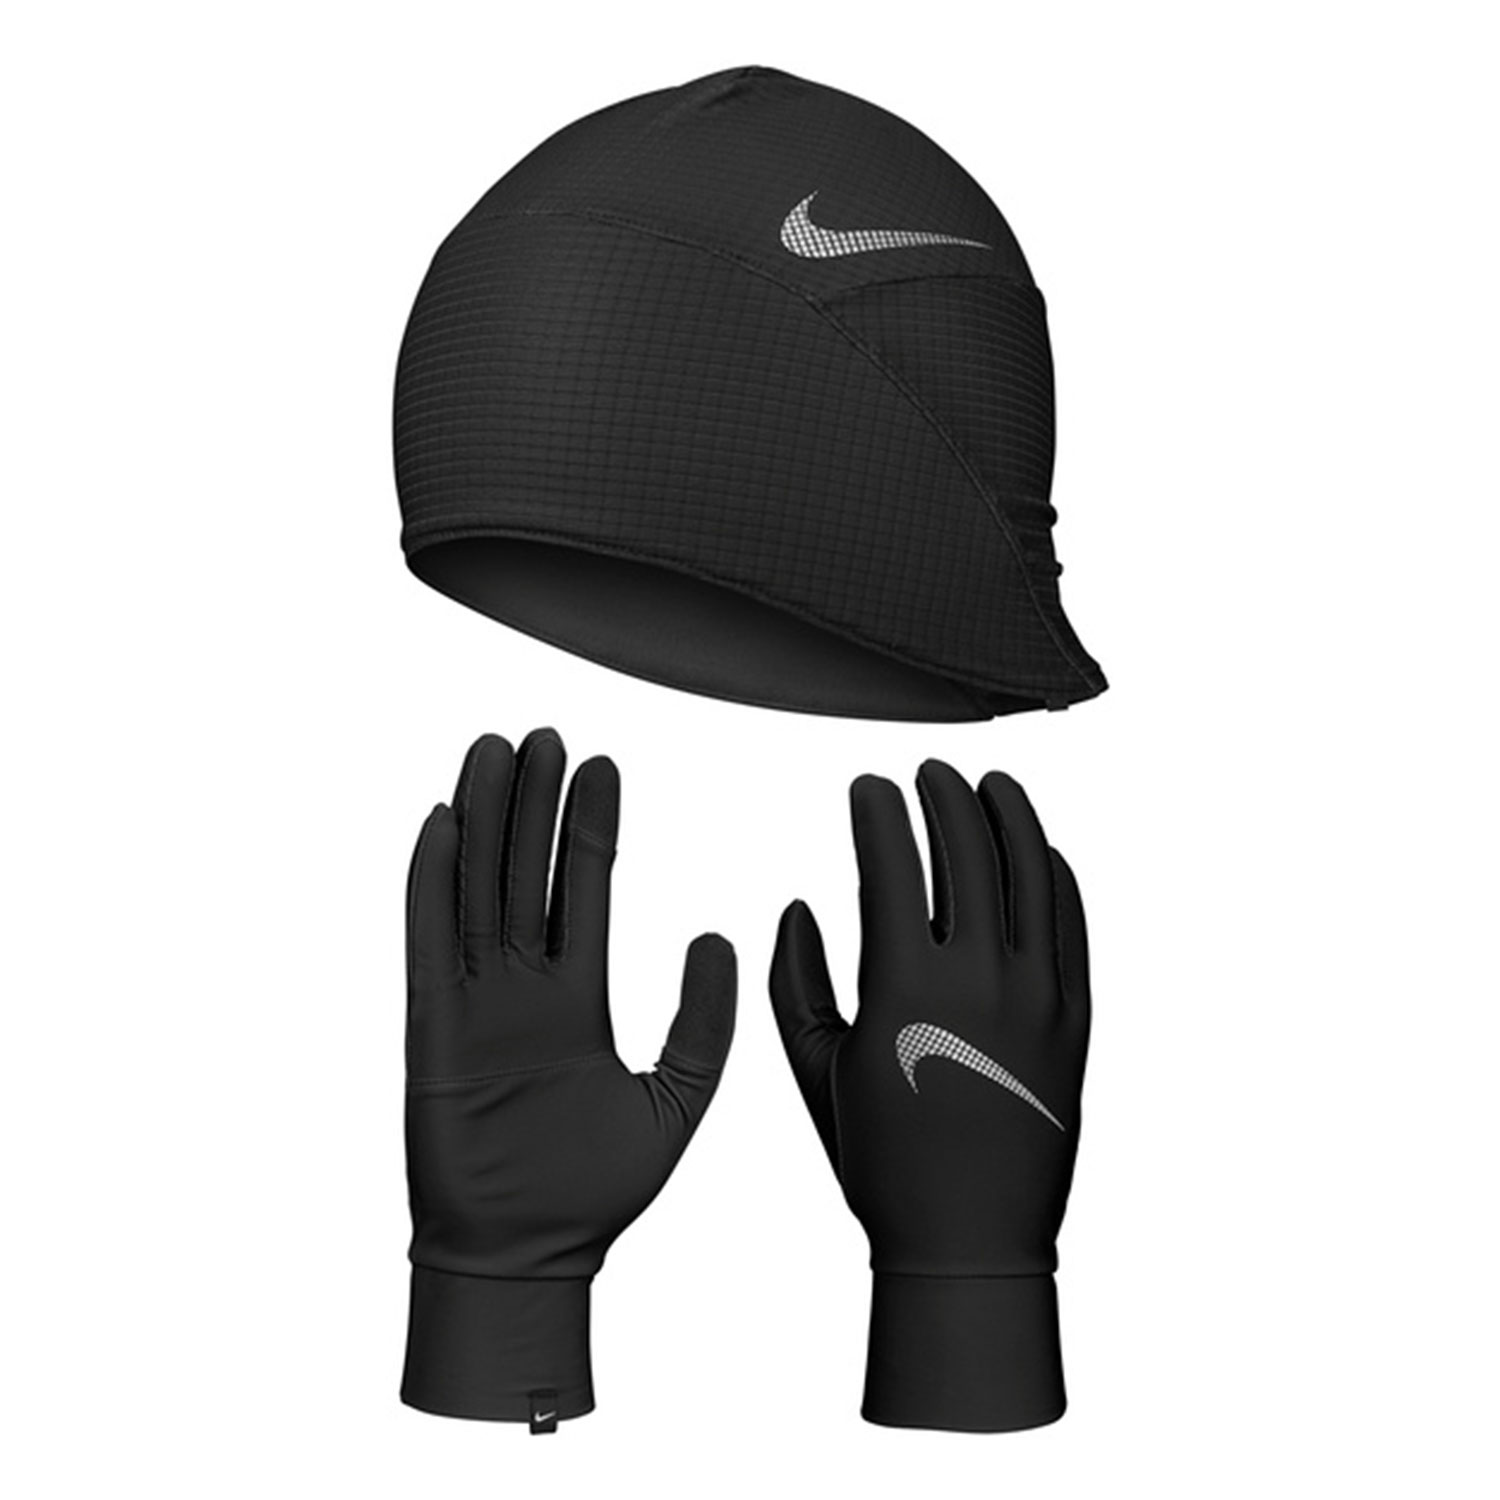 Nike Essential Gorro y Guantes - Black/Silver